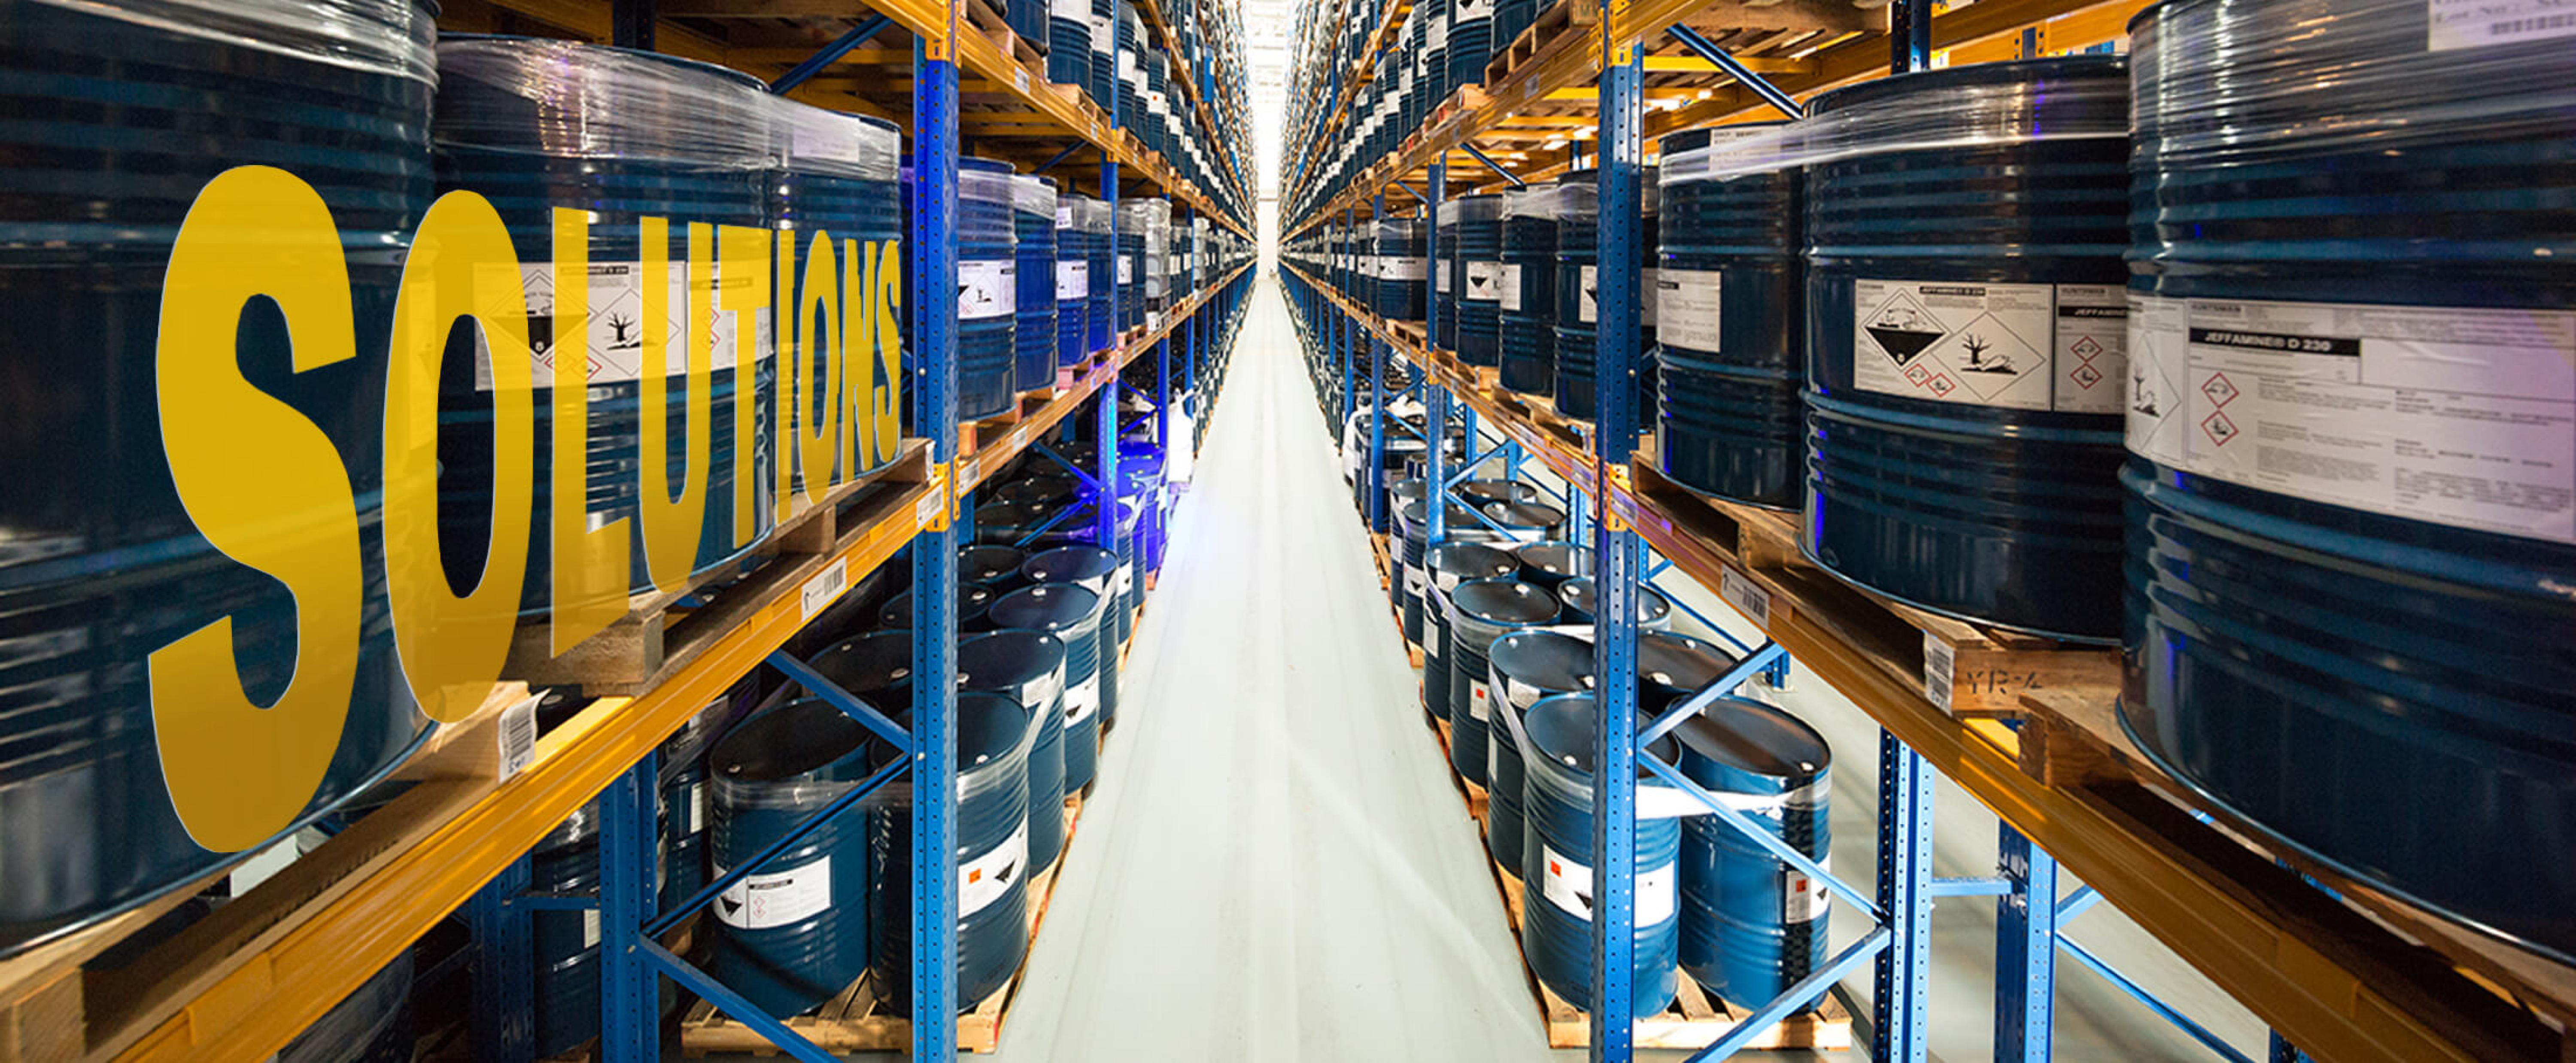 A high warehouse corridor